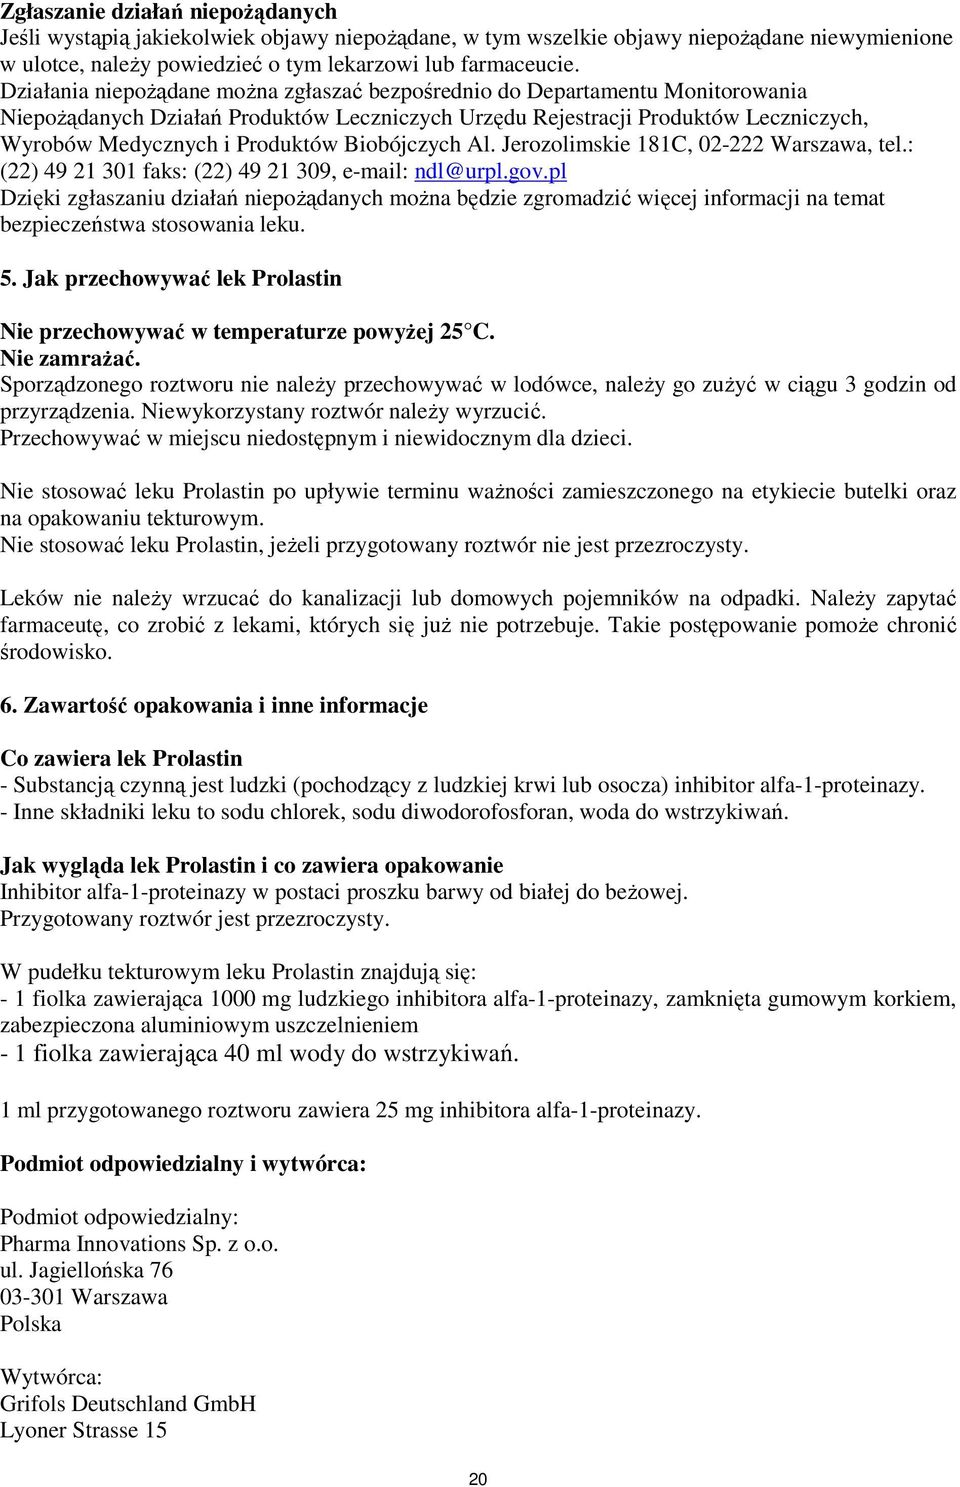 Biobójczych Al. Jerozolimskie 181C, 02-222 Warszawa, tel.: (22) 49 21 301 faks: (22) 49 21 309, e-mail: ndl@urpl.gov.